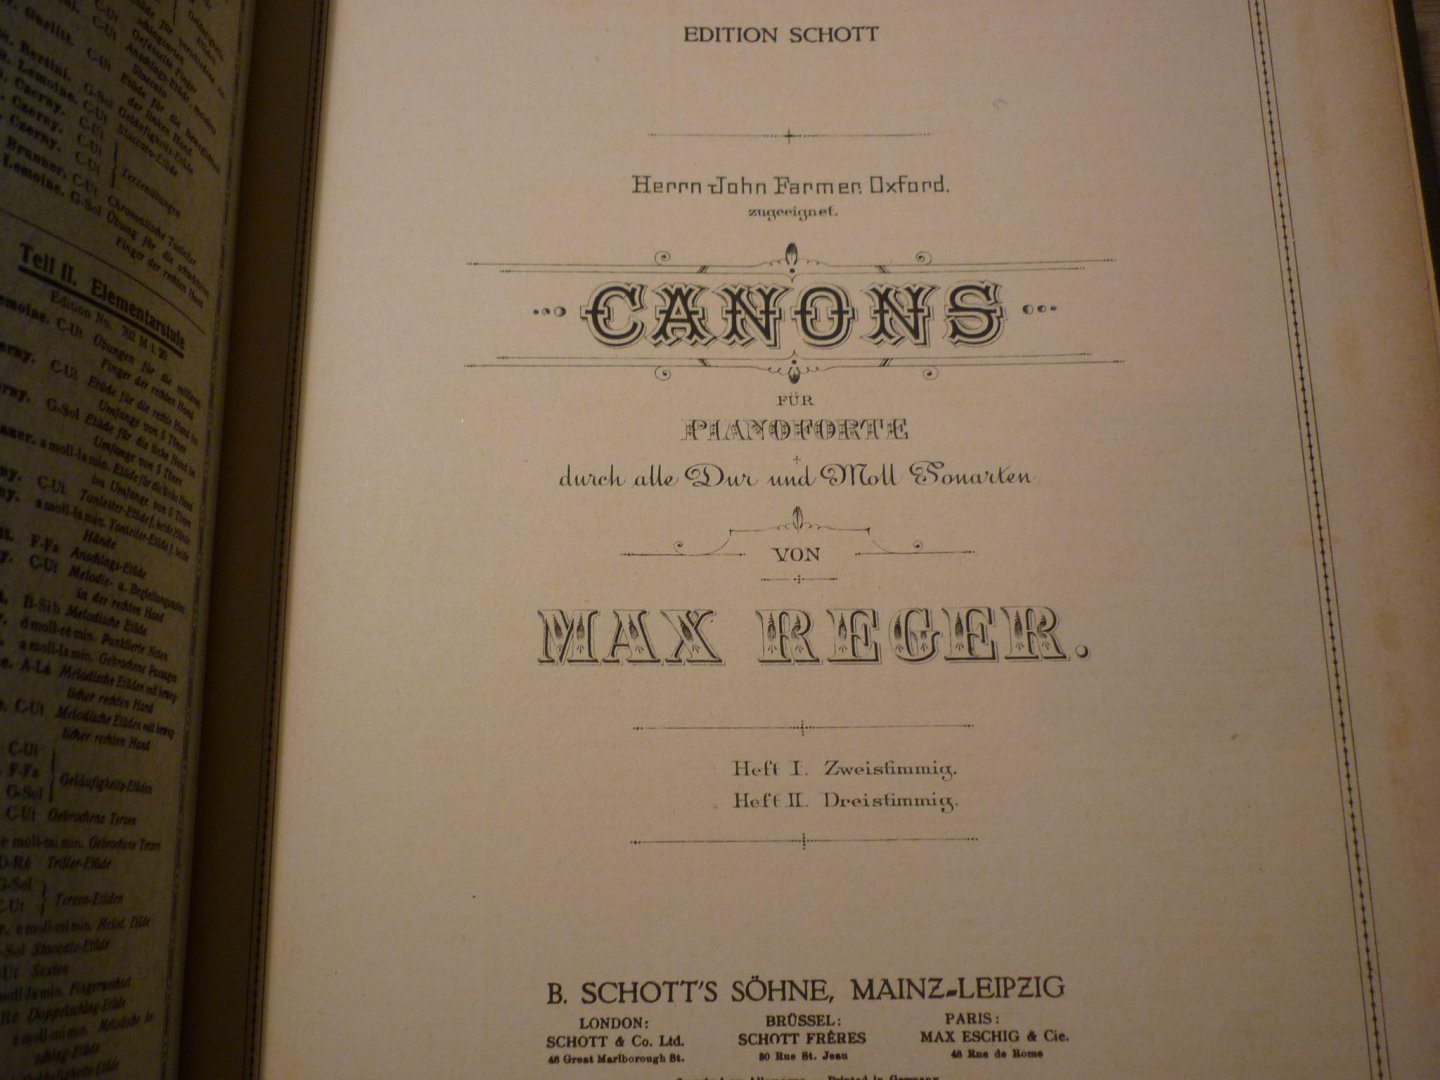 Reger; Max (1873 - 1916) - Canons - Heft I (zweistimmig) en Heft II (dreistimmig) - Piano